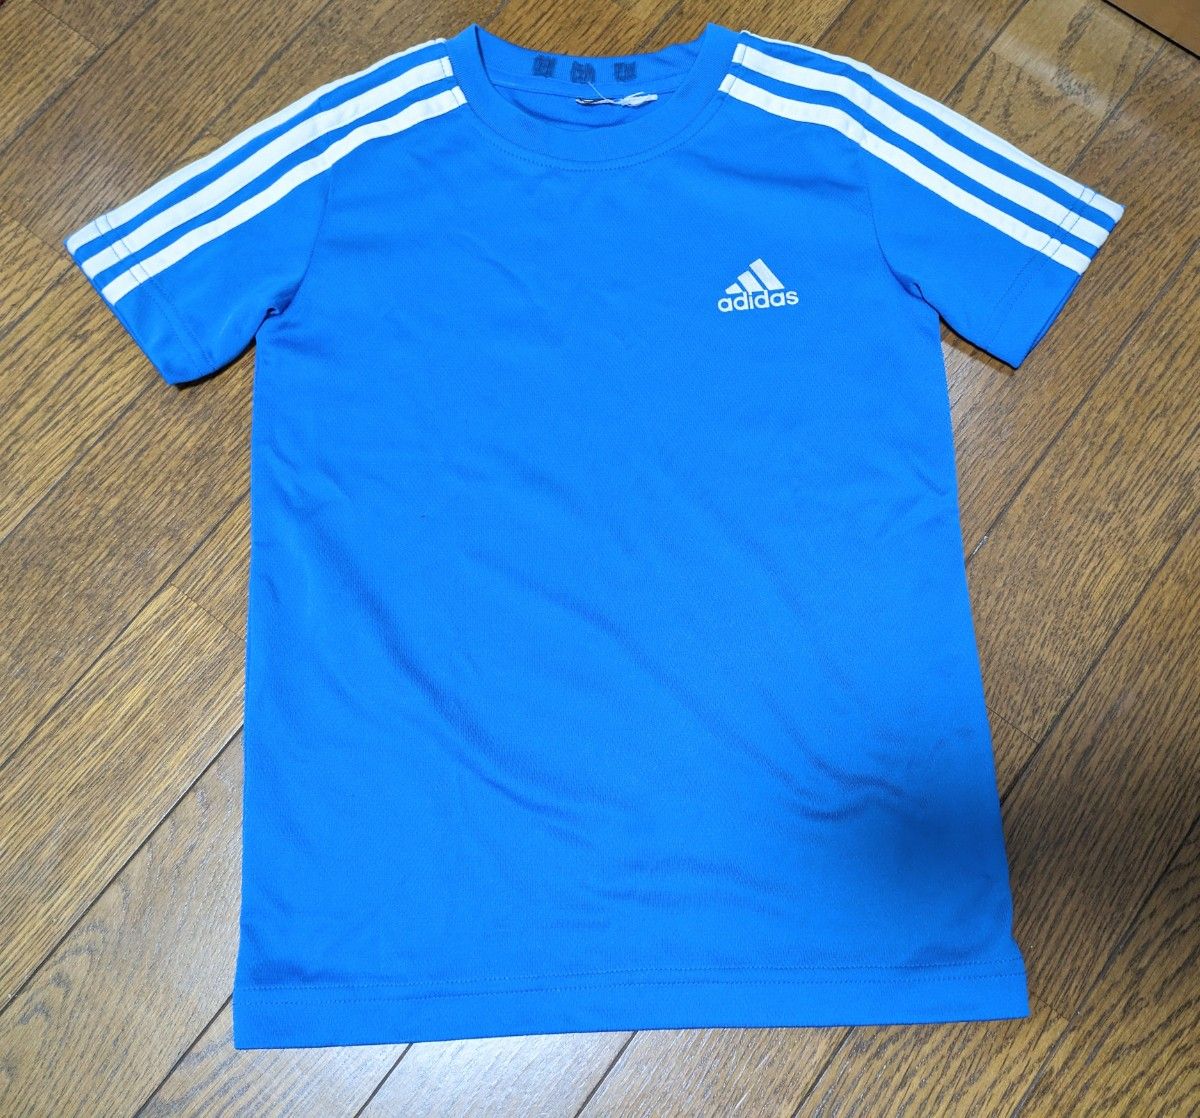 adidas アディダス サッカー 練習着  半袖 半袖Tシャツ ウェアー サイズ120ぐらい フットサル  Tシャツ